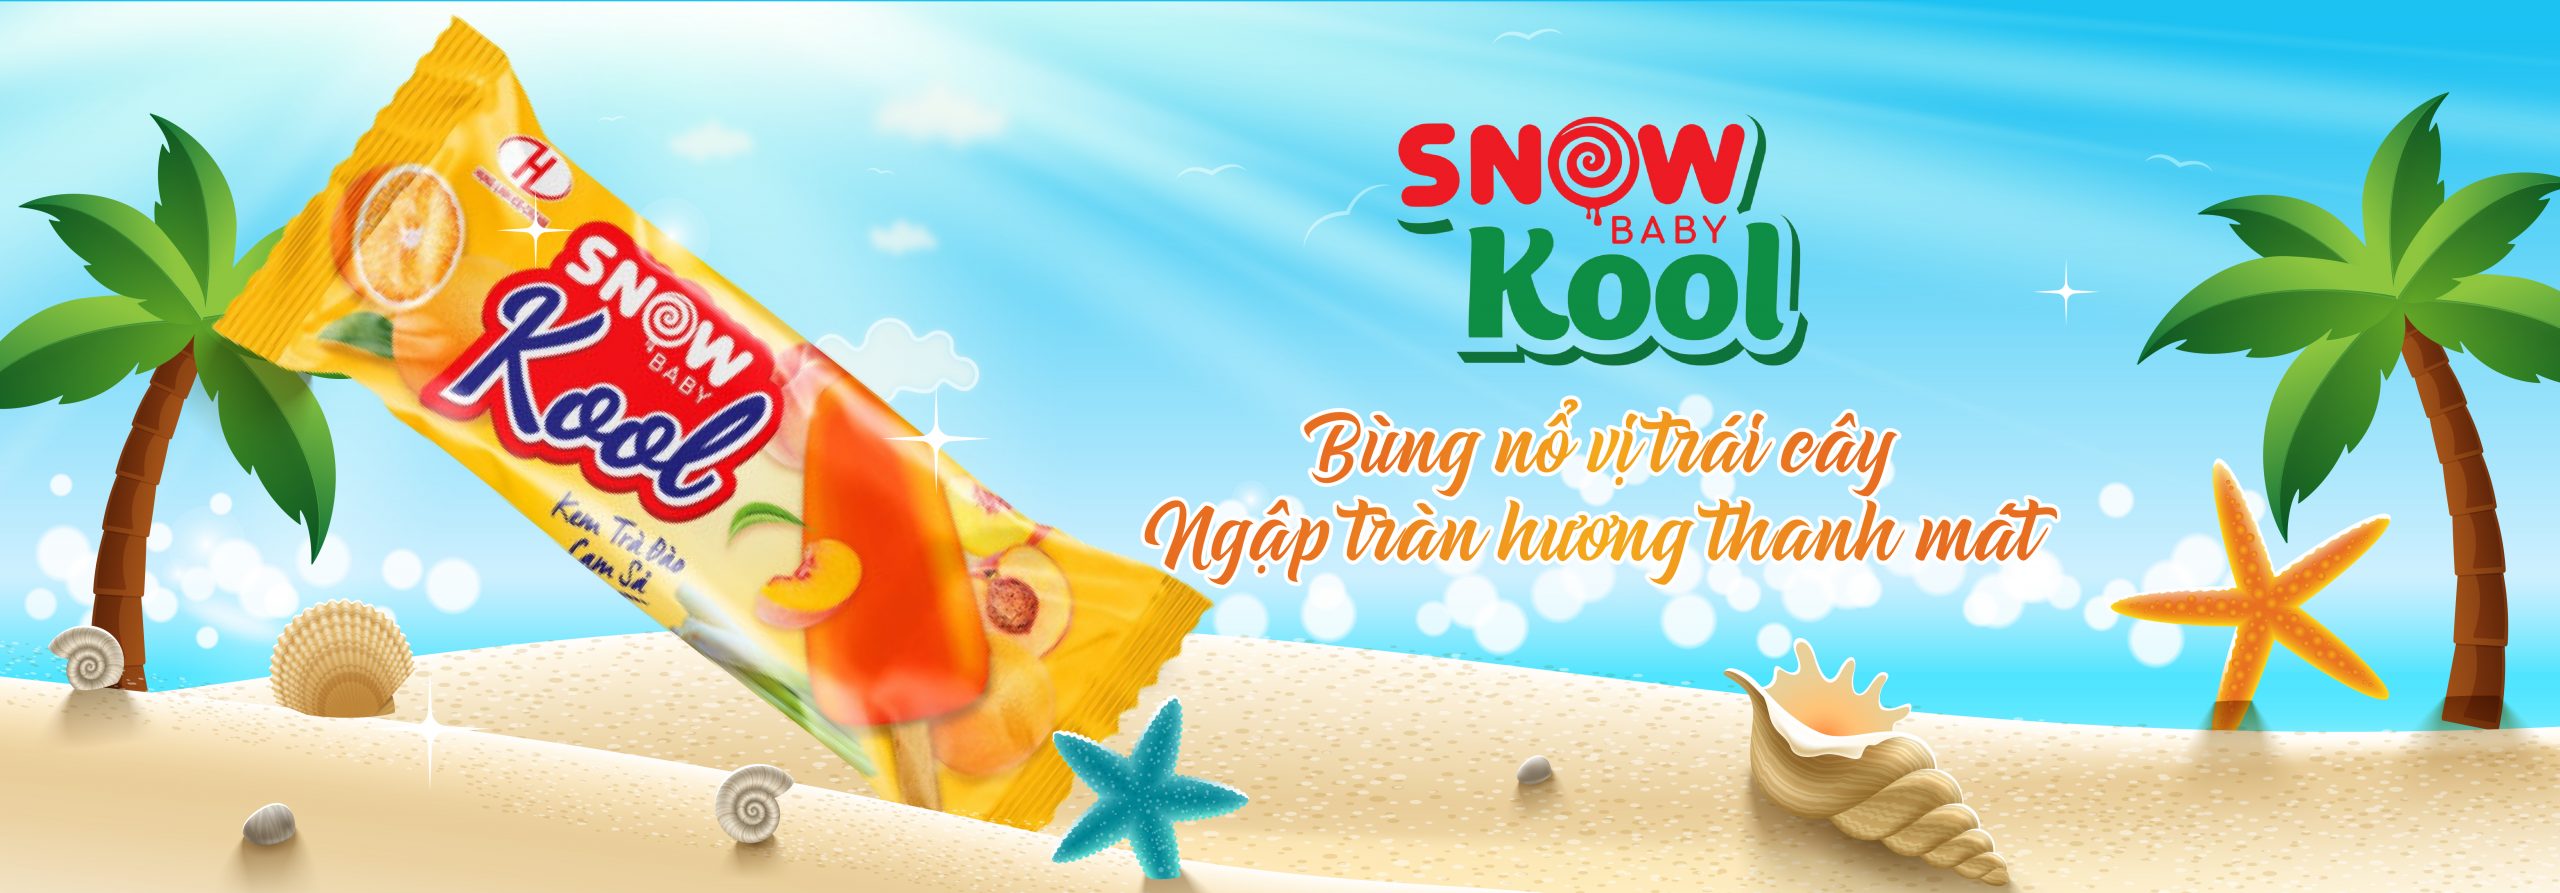 Kem Snow Baby Kool